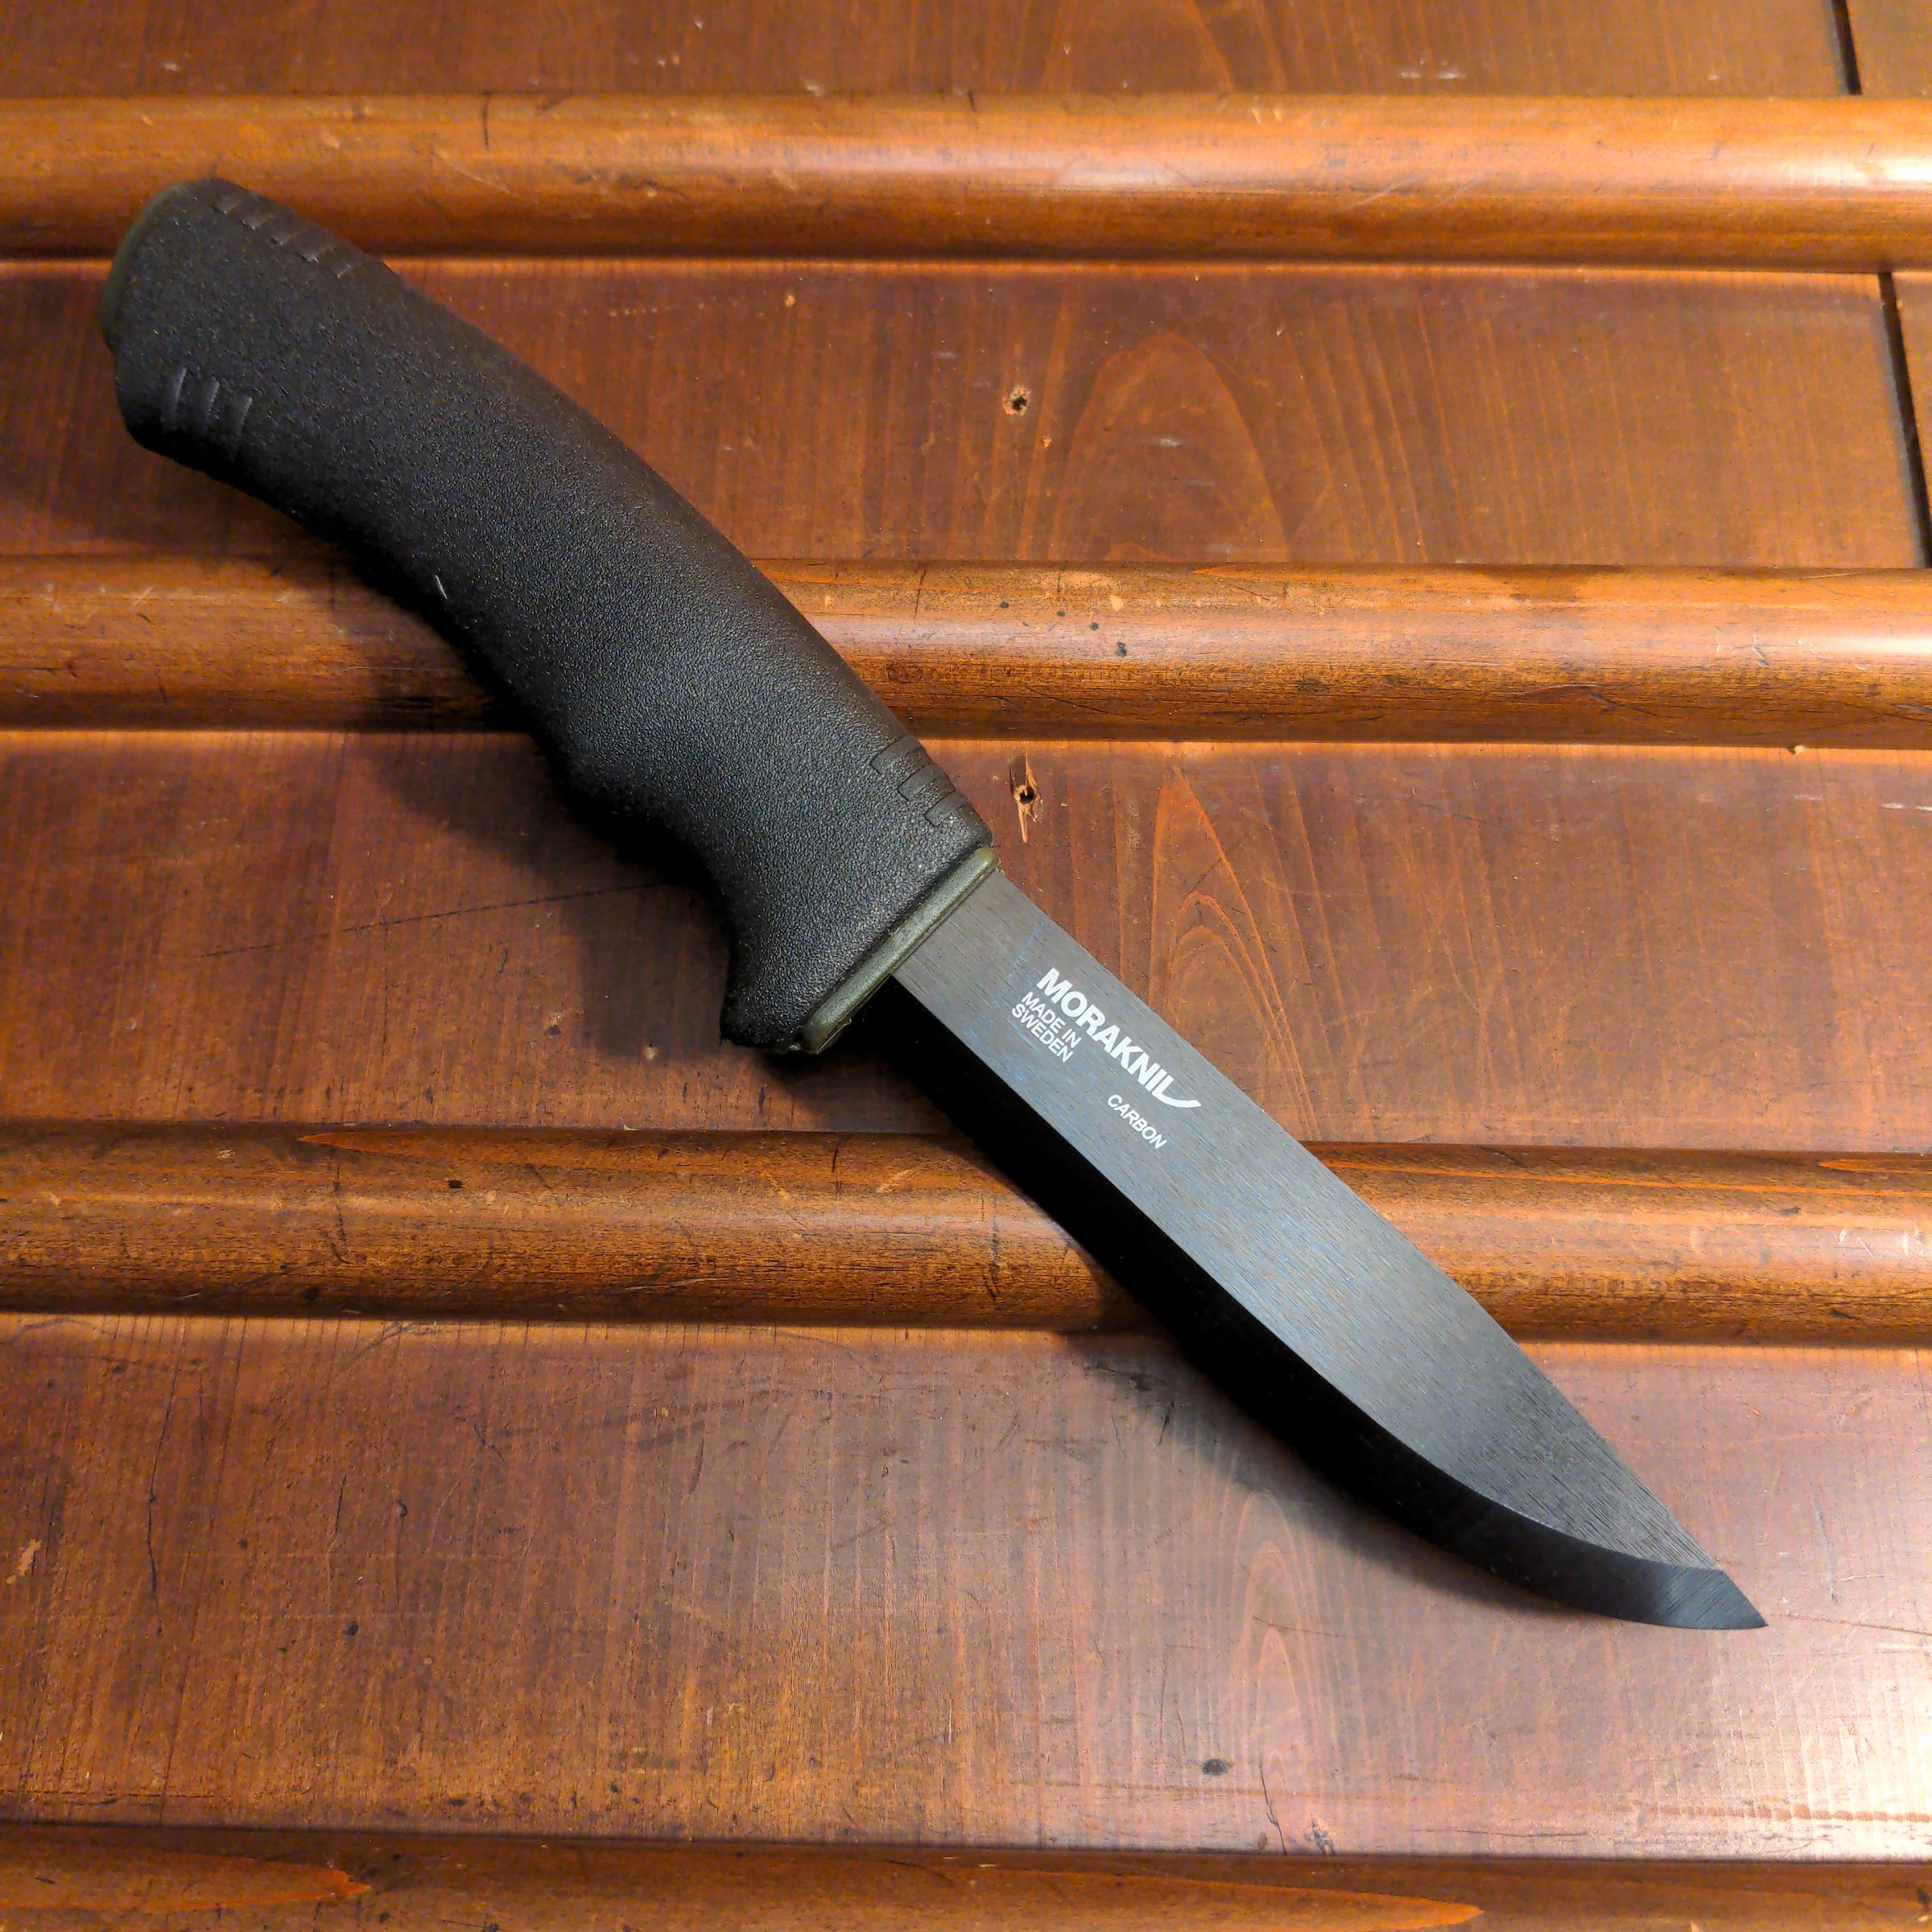 Morakniv Bushcraft Survival, Fixed Blade Knife